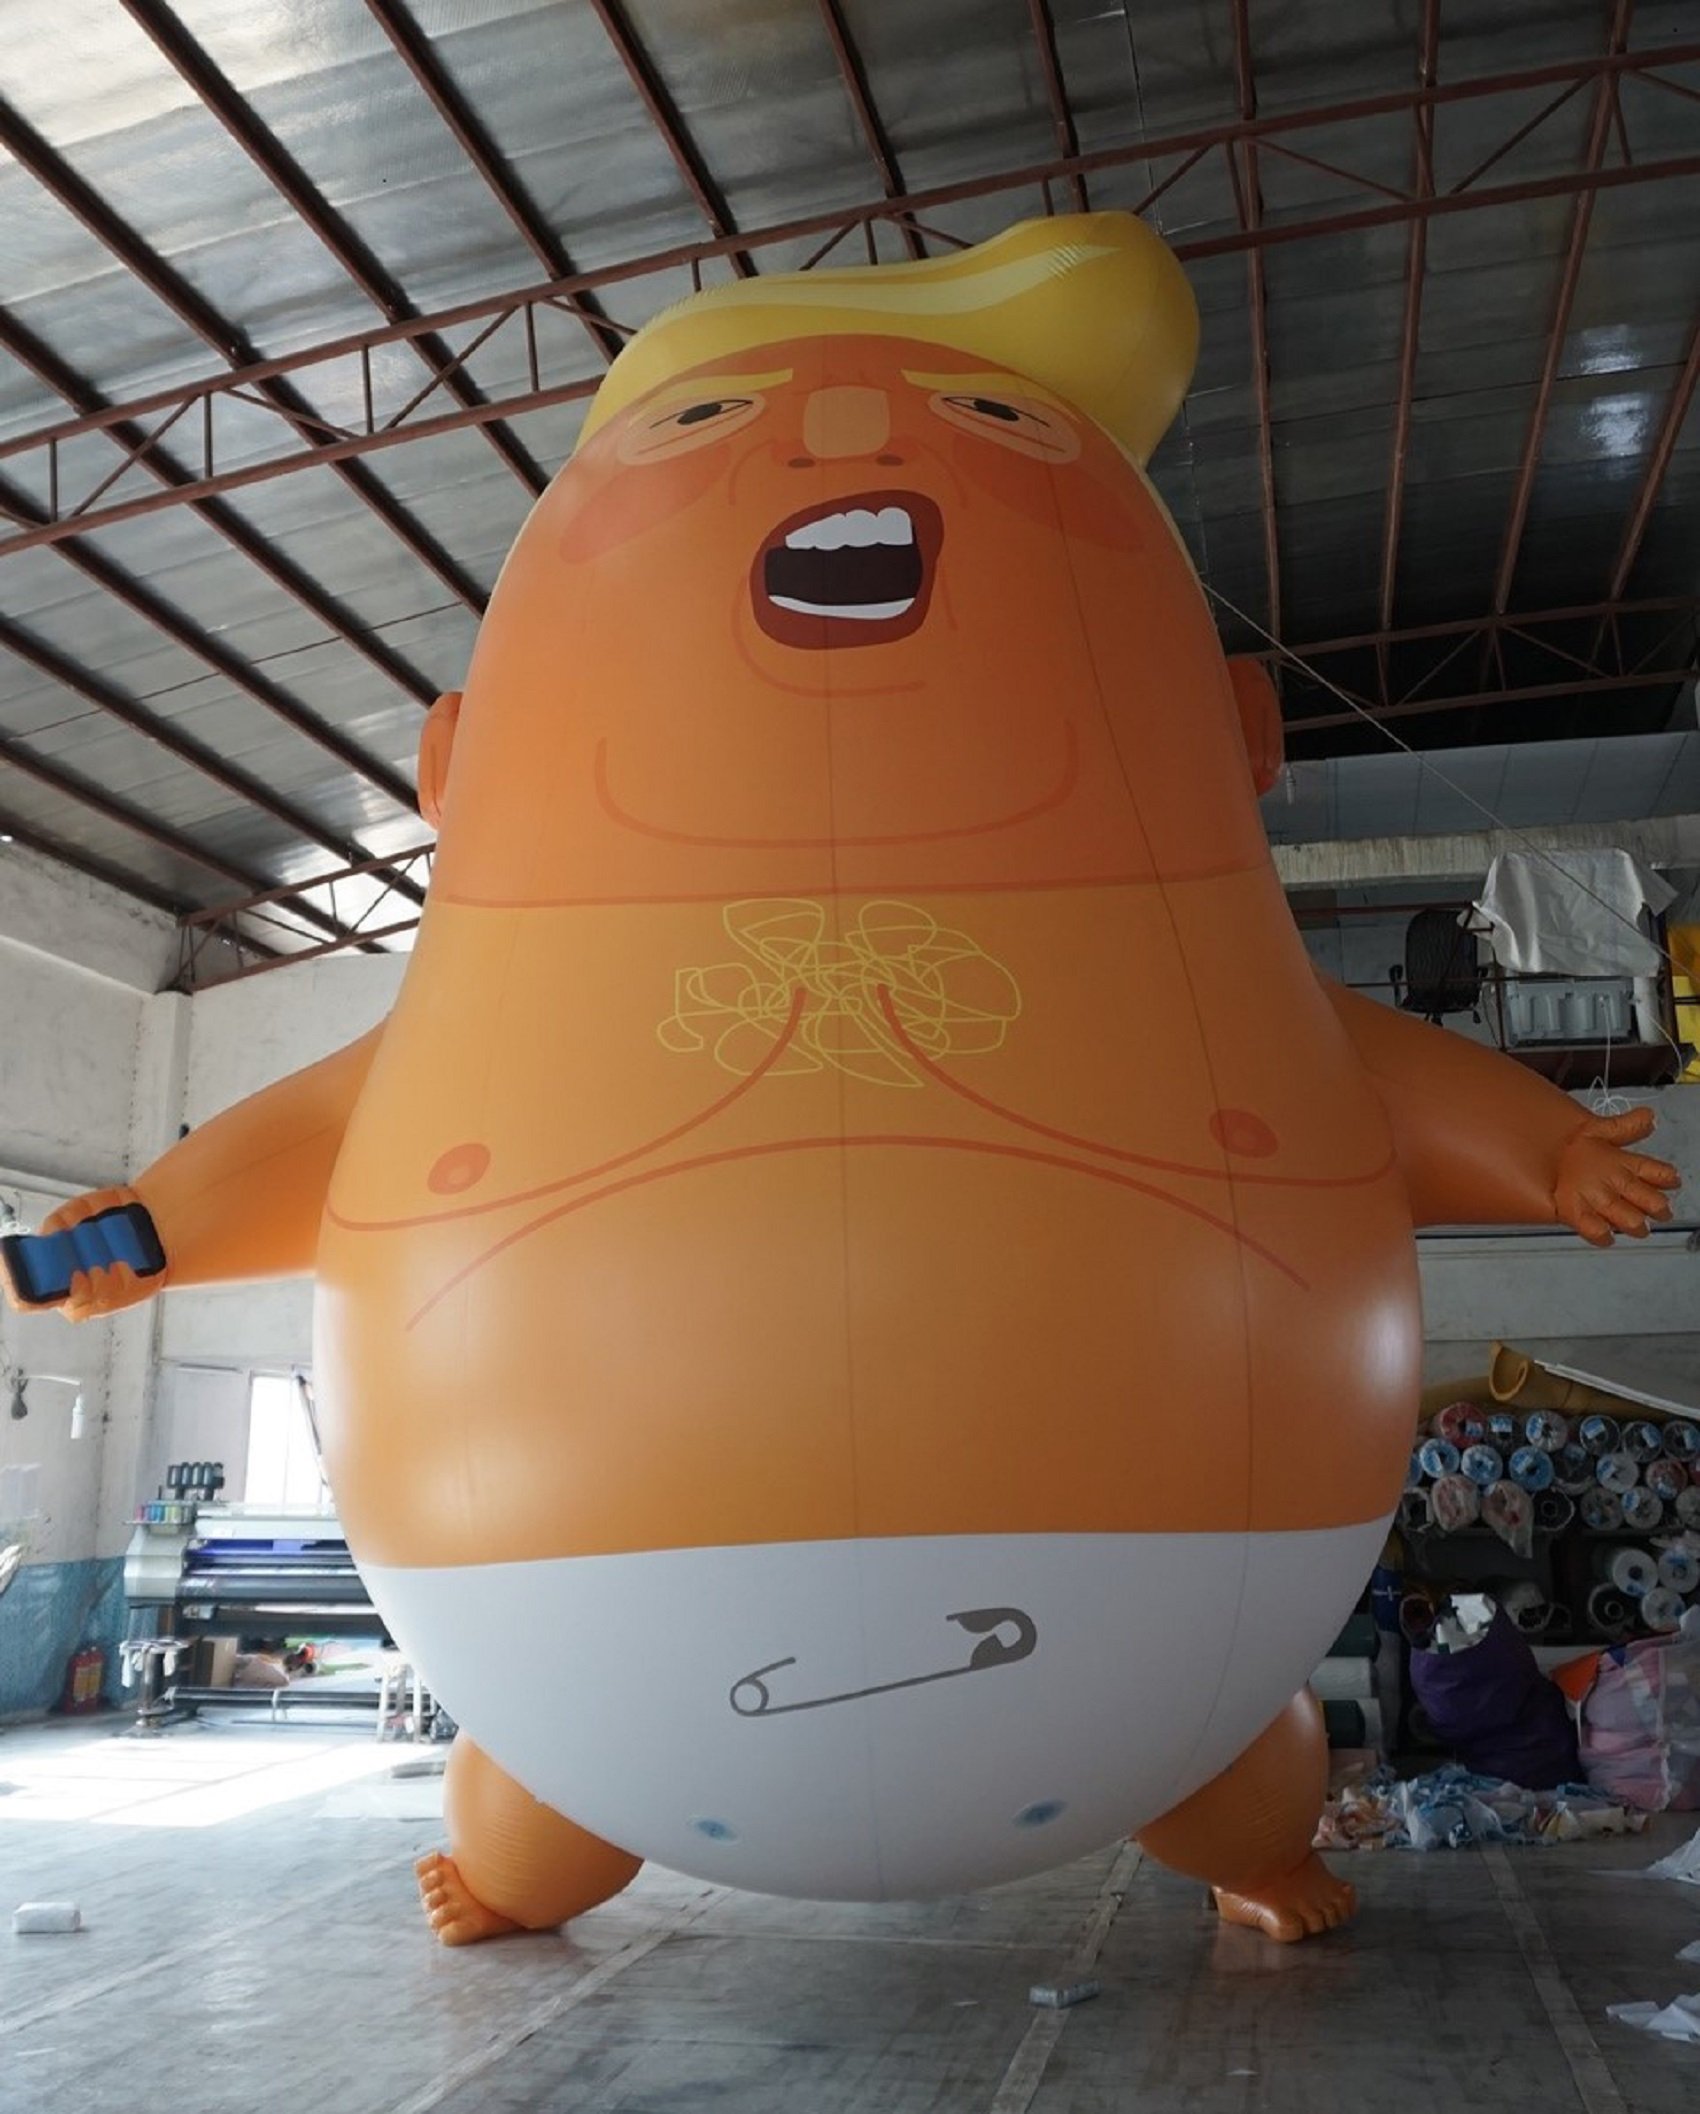 Aquest és el globus que vol rebre Trump a Londres